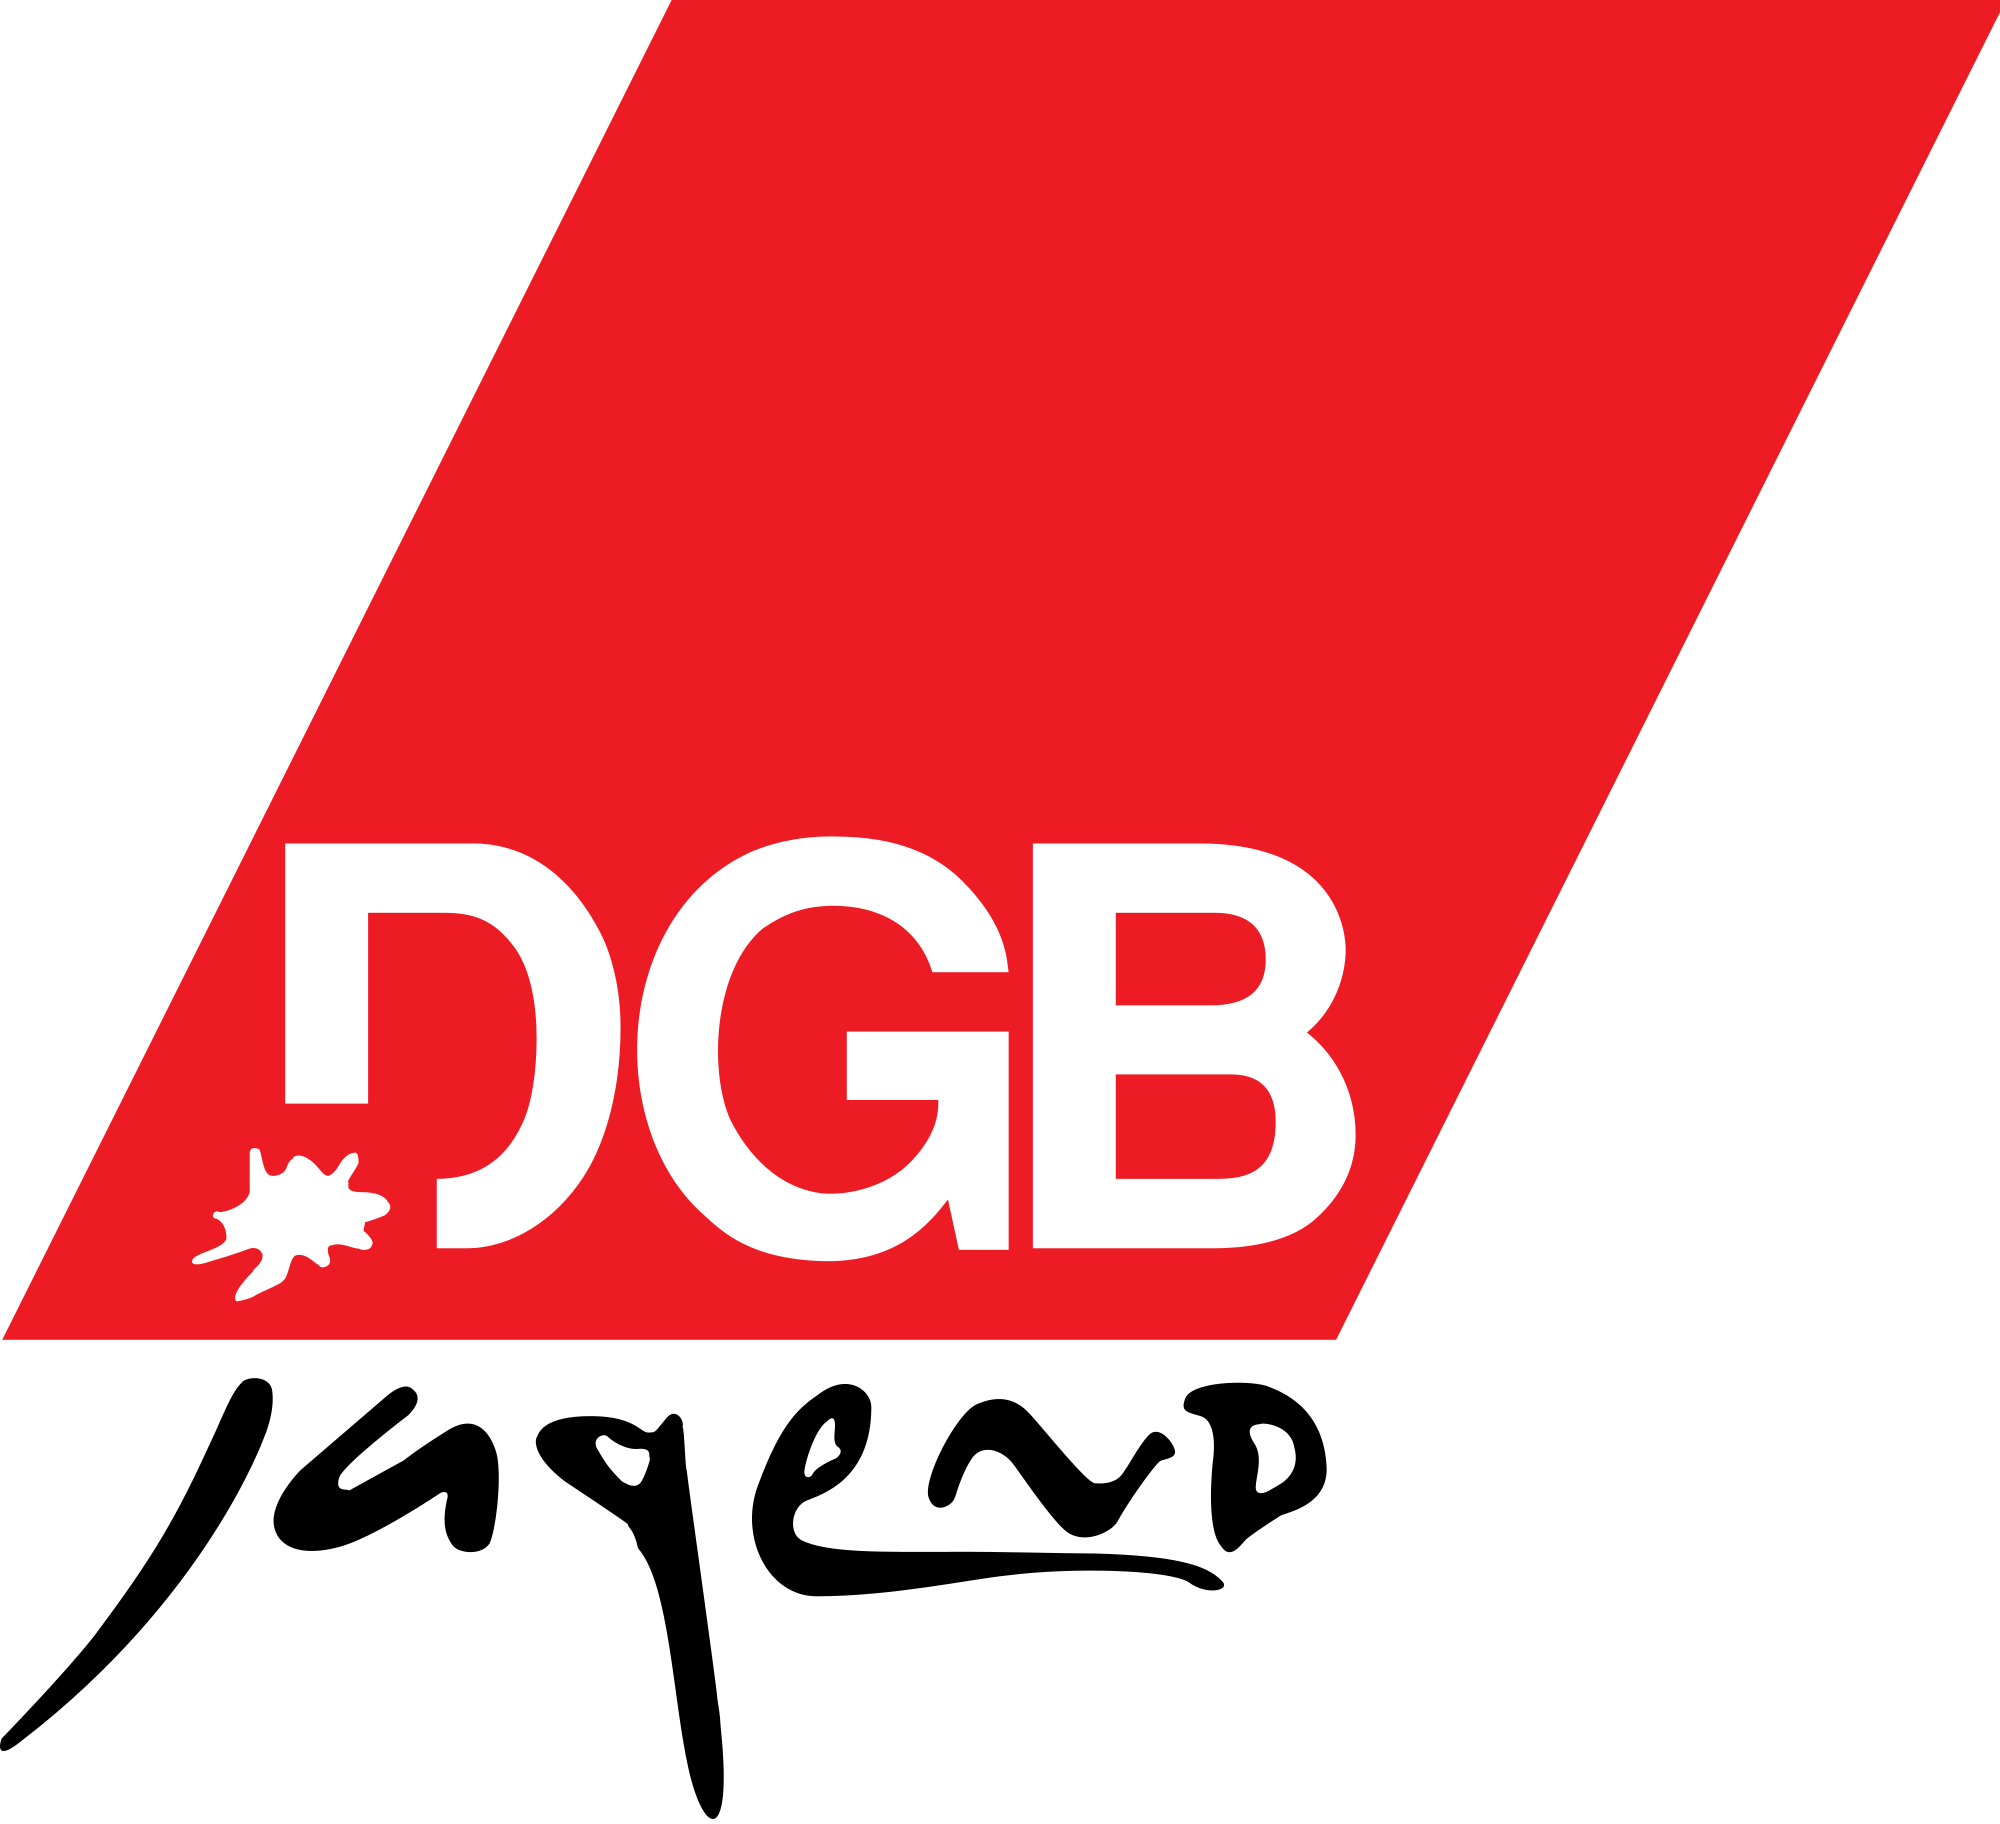 DGB-Jugend